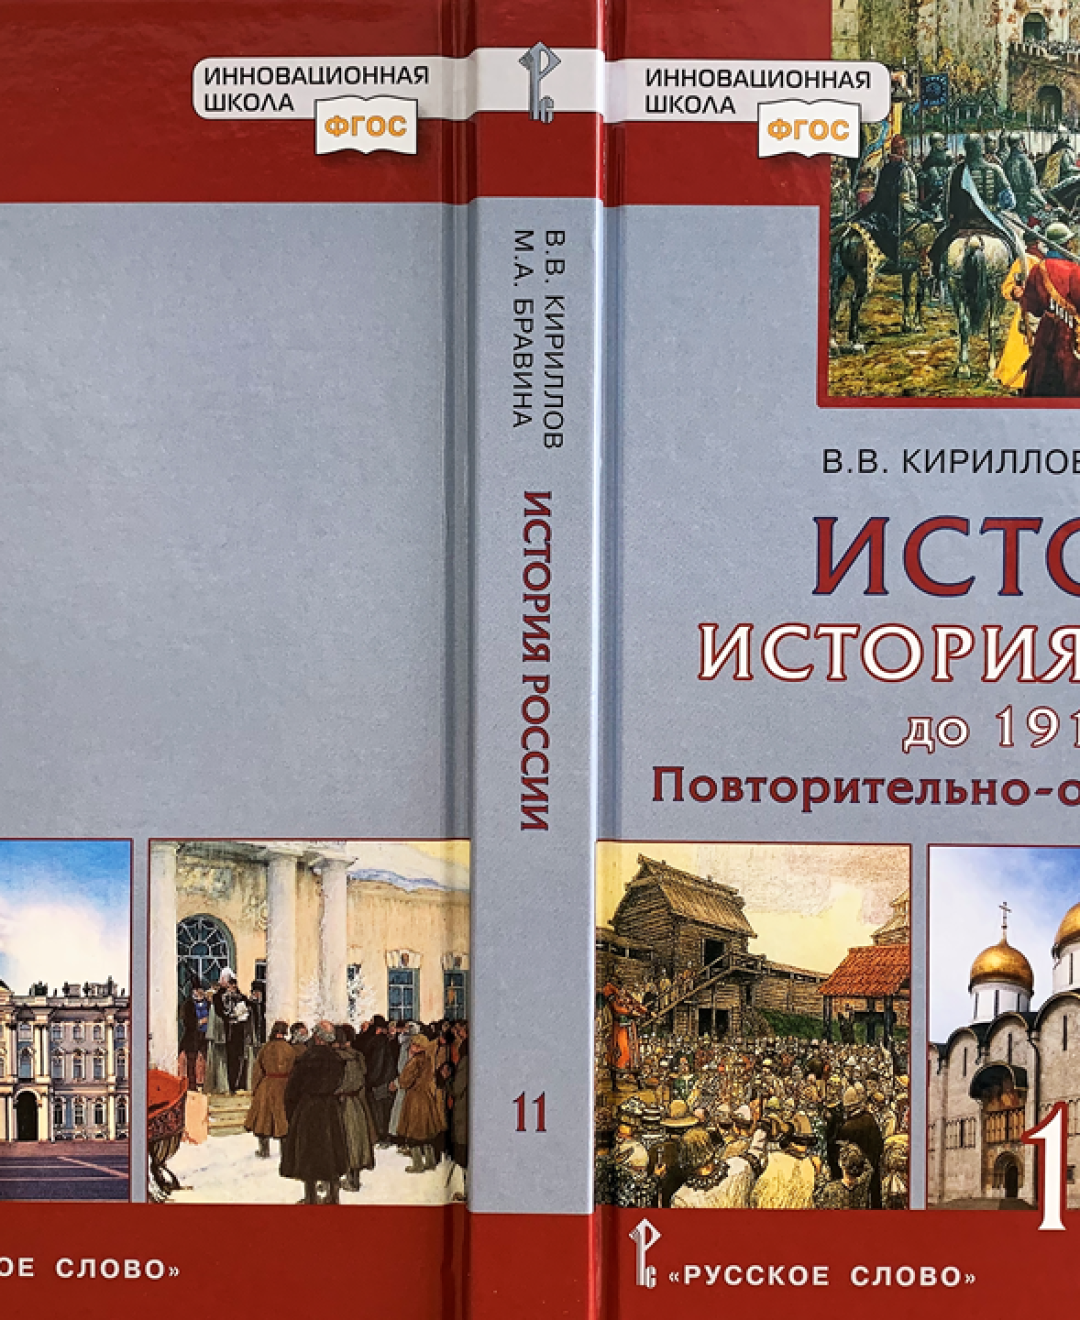 Учебник по истории россии никонов